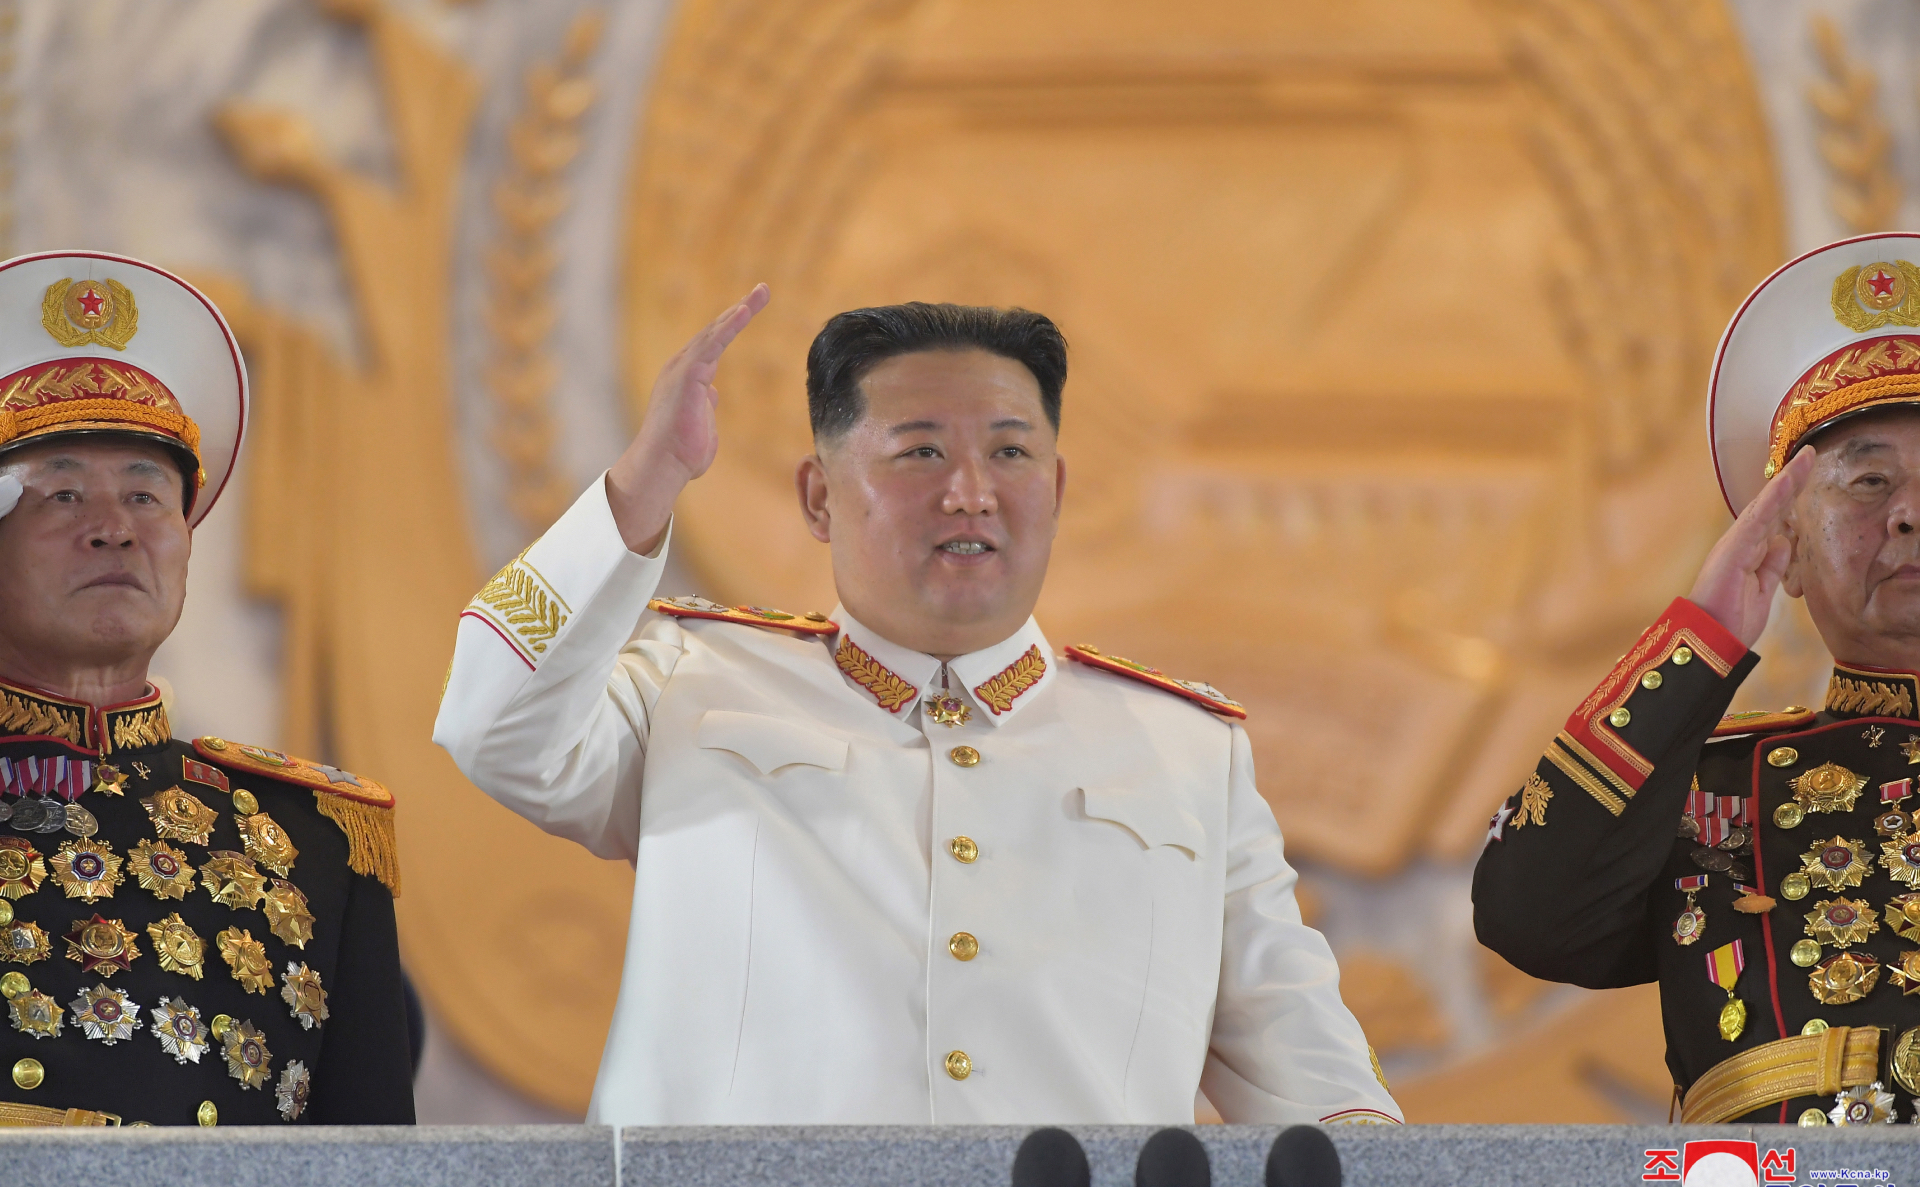 Ким Чен Ын призвал готовиться к превентивному сдерживанию ядерной угрозы"/>













